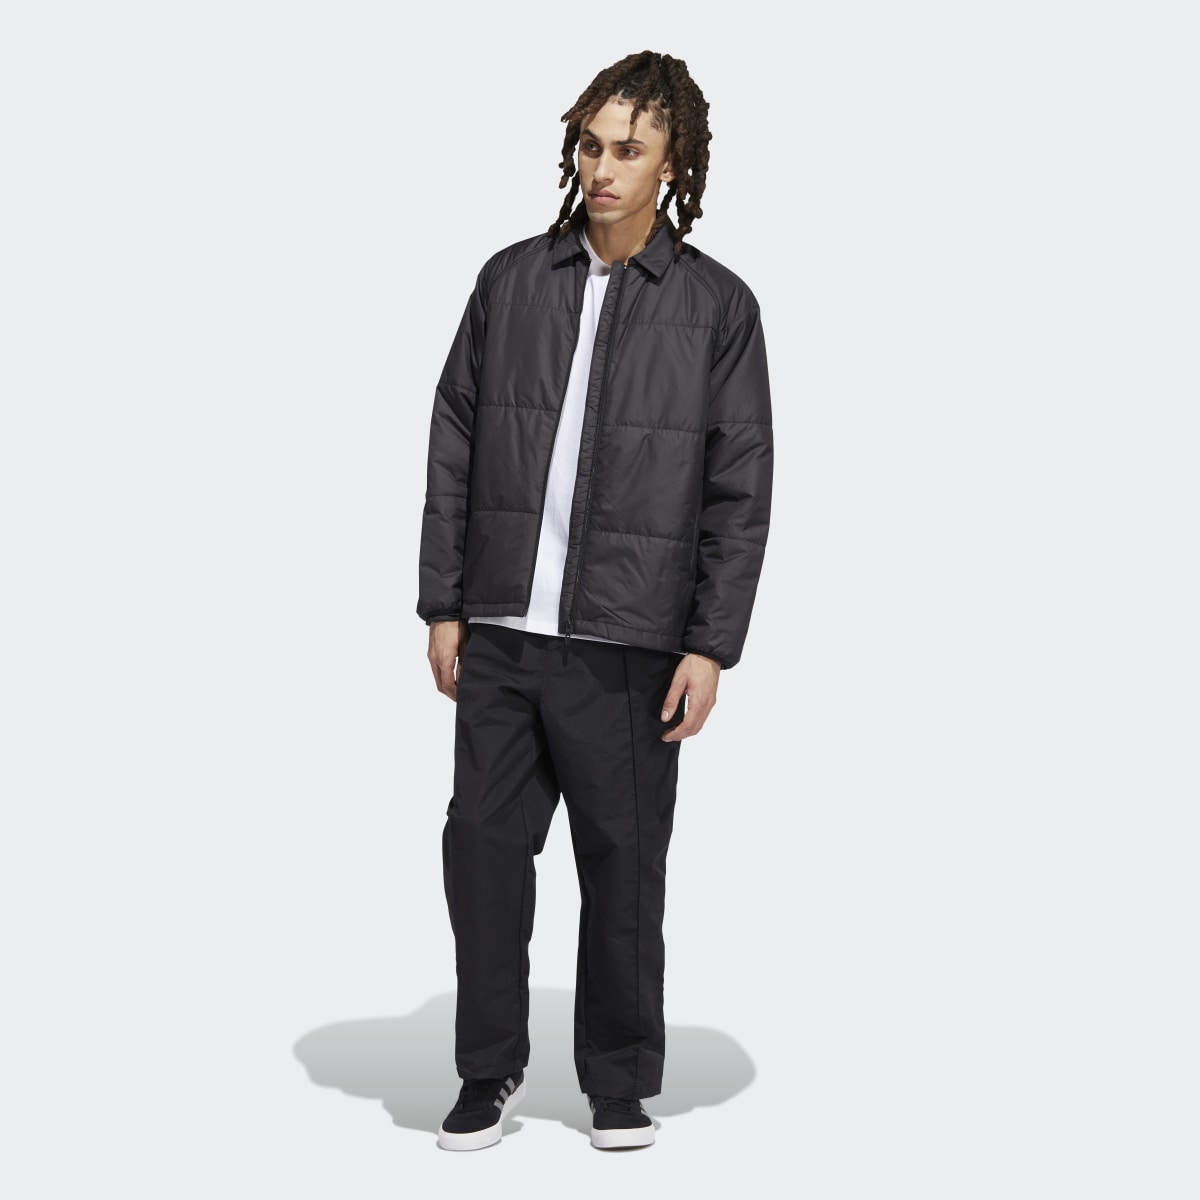 Adidas PrimaLoft Outer Station Jacket (Gender Neutral). 6